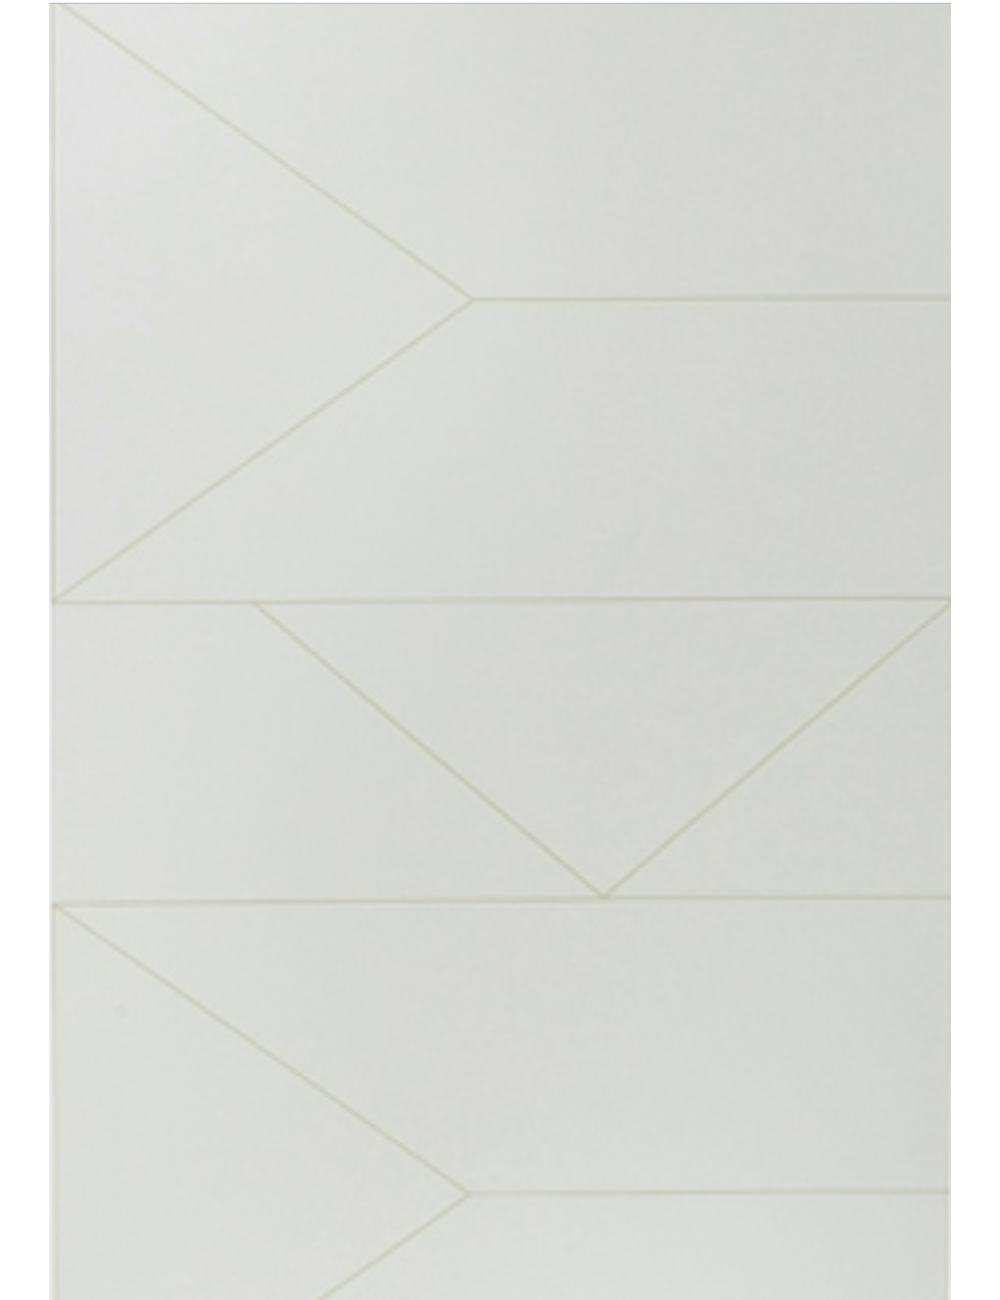 Envelope - HD Wallpaper 